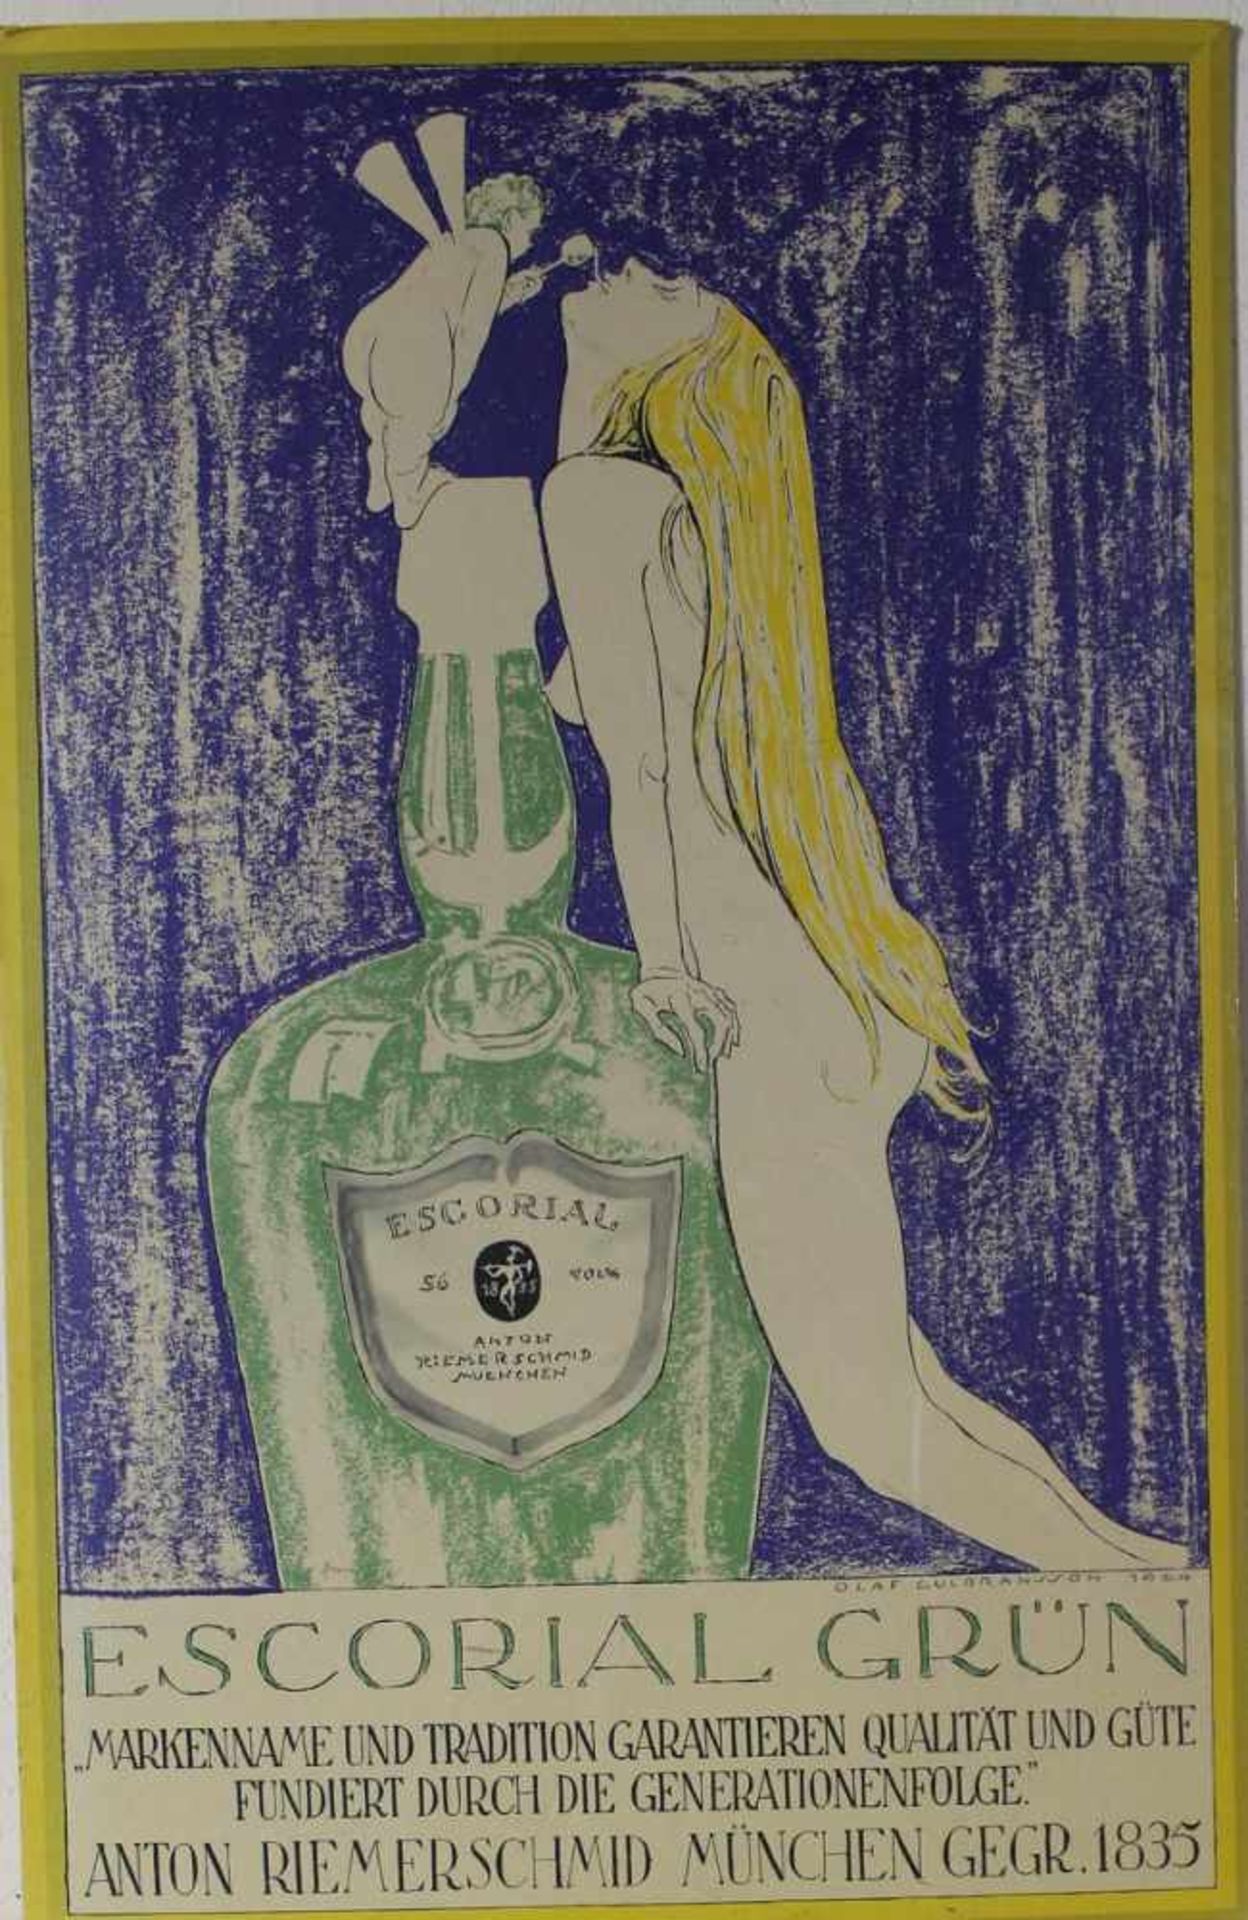 Werbetafel Escorial grün nach Olaf Gulbrannsson, Reprint nach dem Entwurf von 1924, ca. 69 x 45